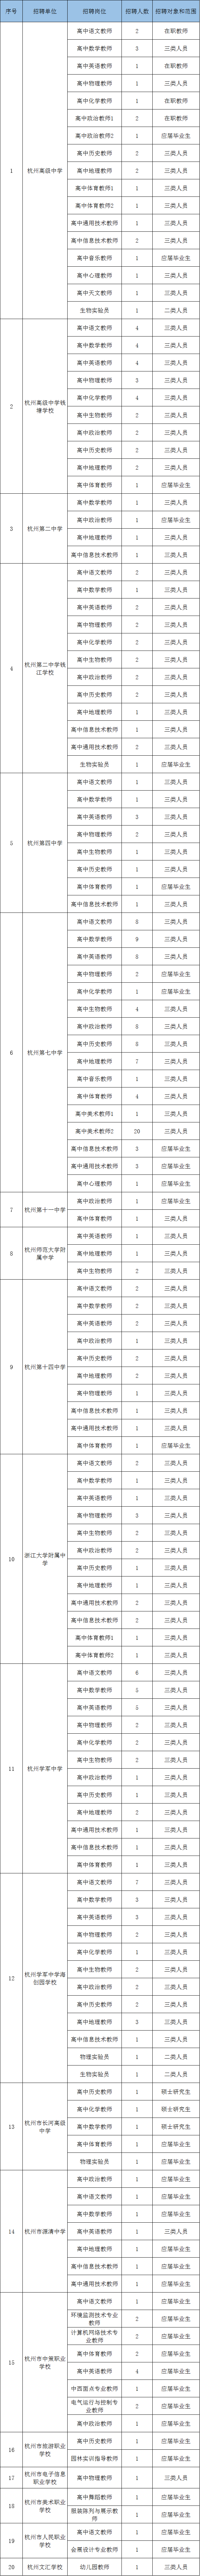 杭州市教育局所属事业单位2020年5月统一招聘计划表